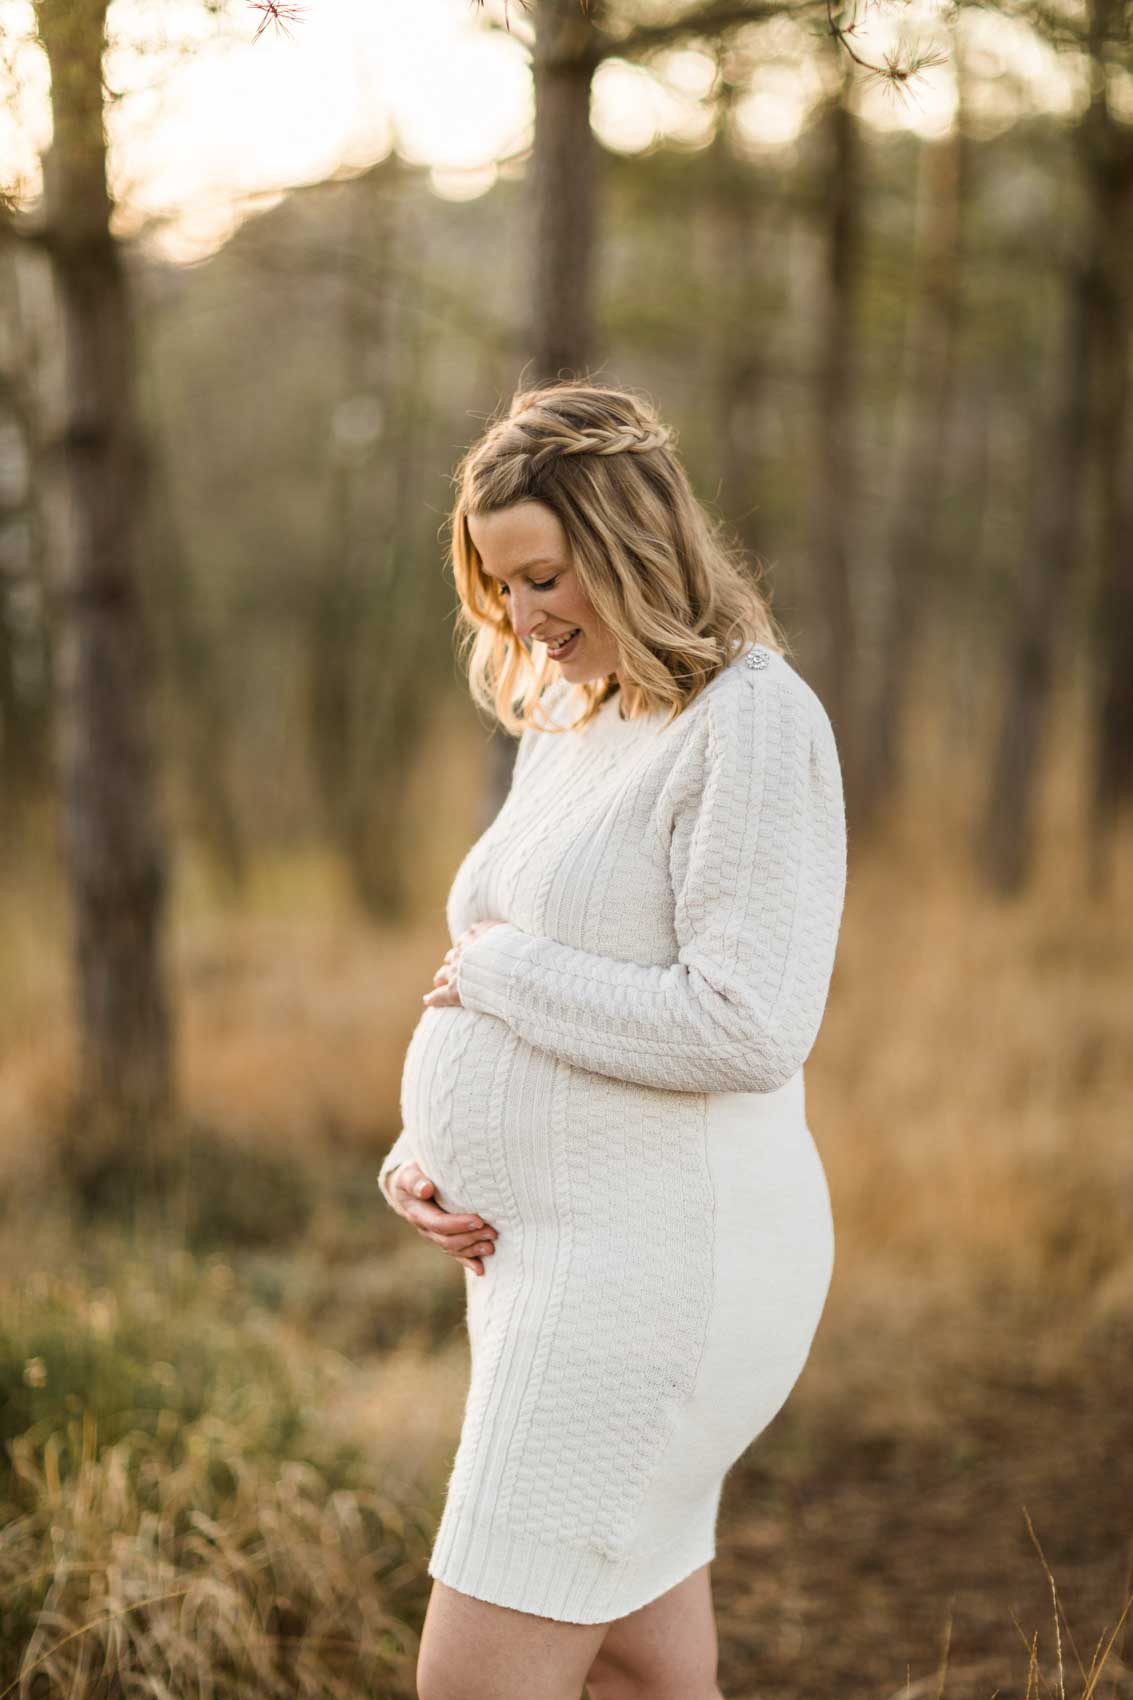 Portraitfoto einer schwangeren Frau in einem wollweißen Strickkleid mit Zopfmuster. Die Frau hat beide Hände auf den Bauch gelegt und schaut hinunter.